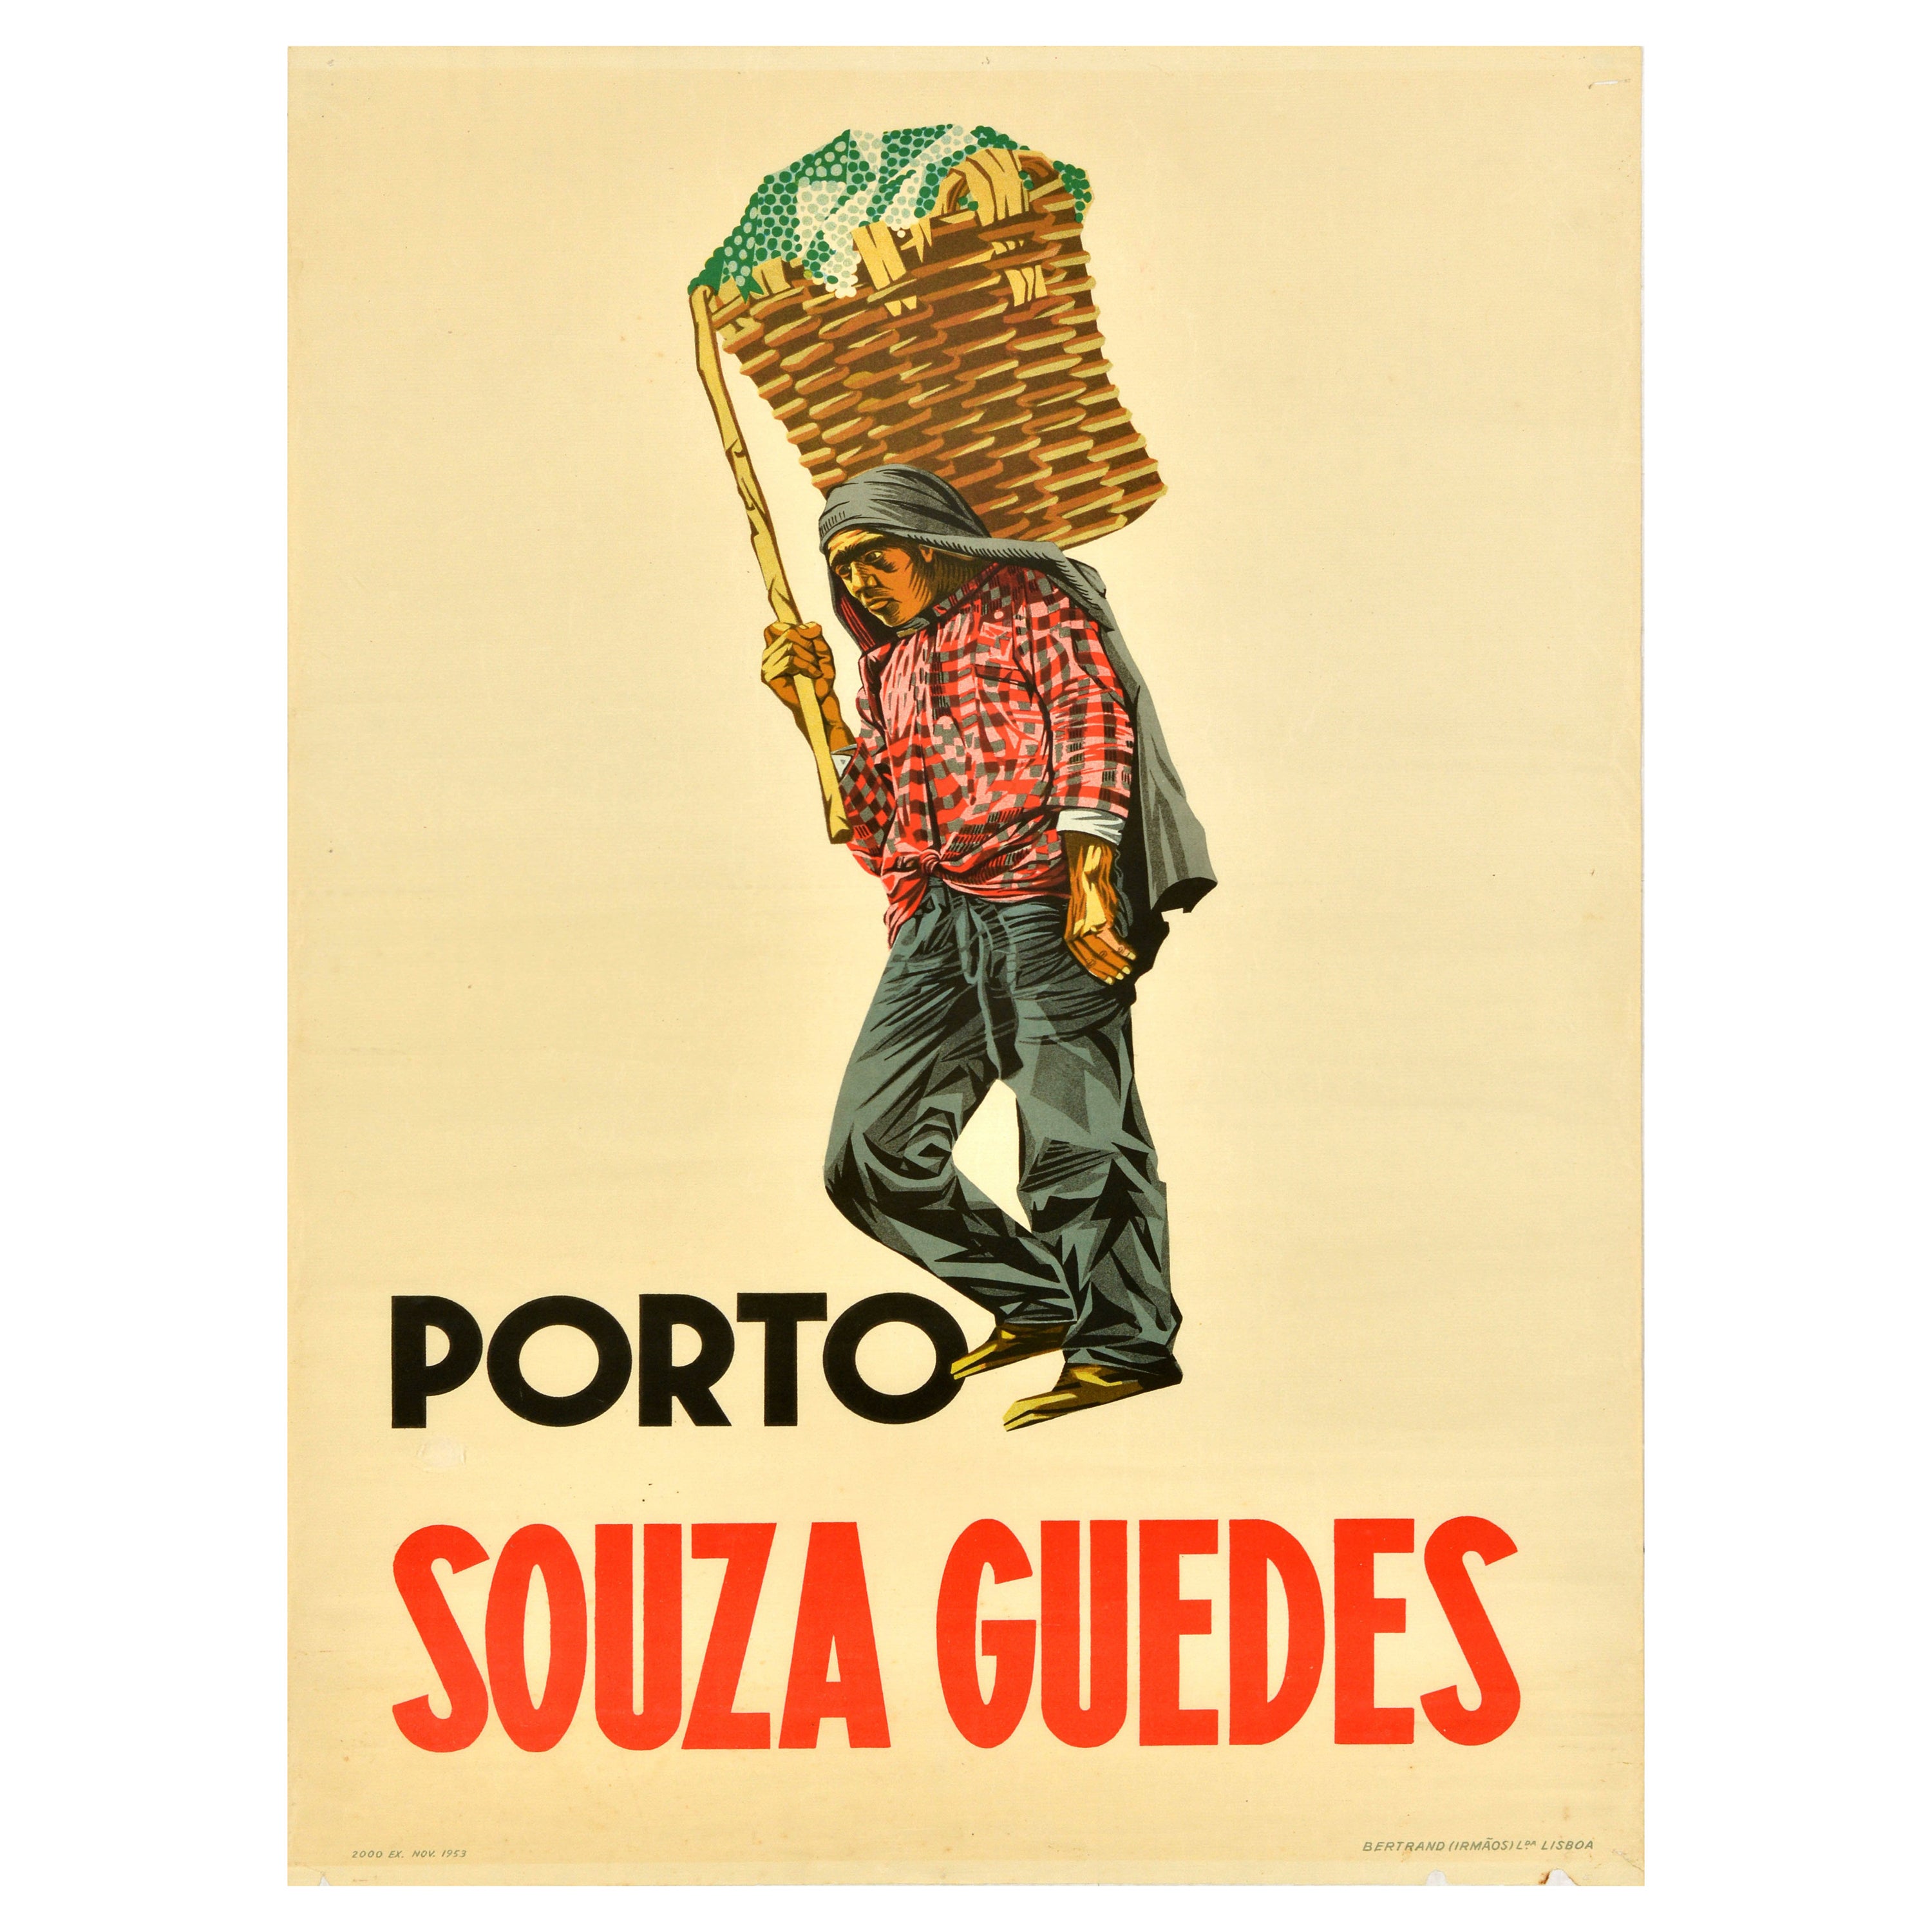 Original Vintage Drink Poster Porto Souza Guedes Port Wine Advertising Portugal